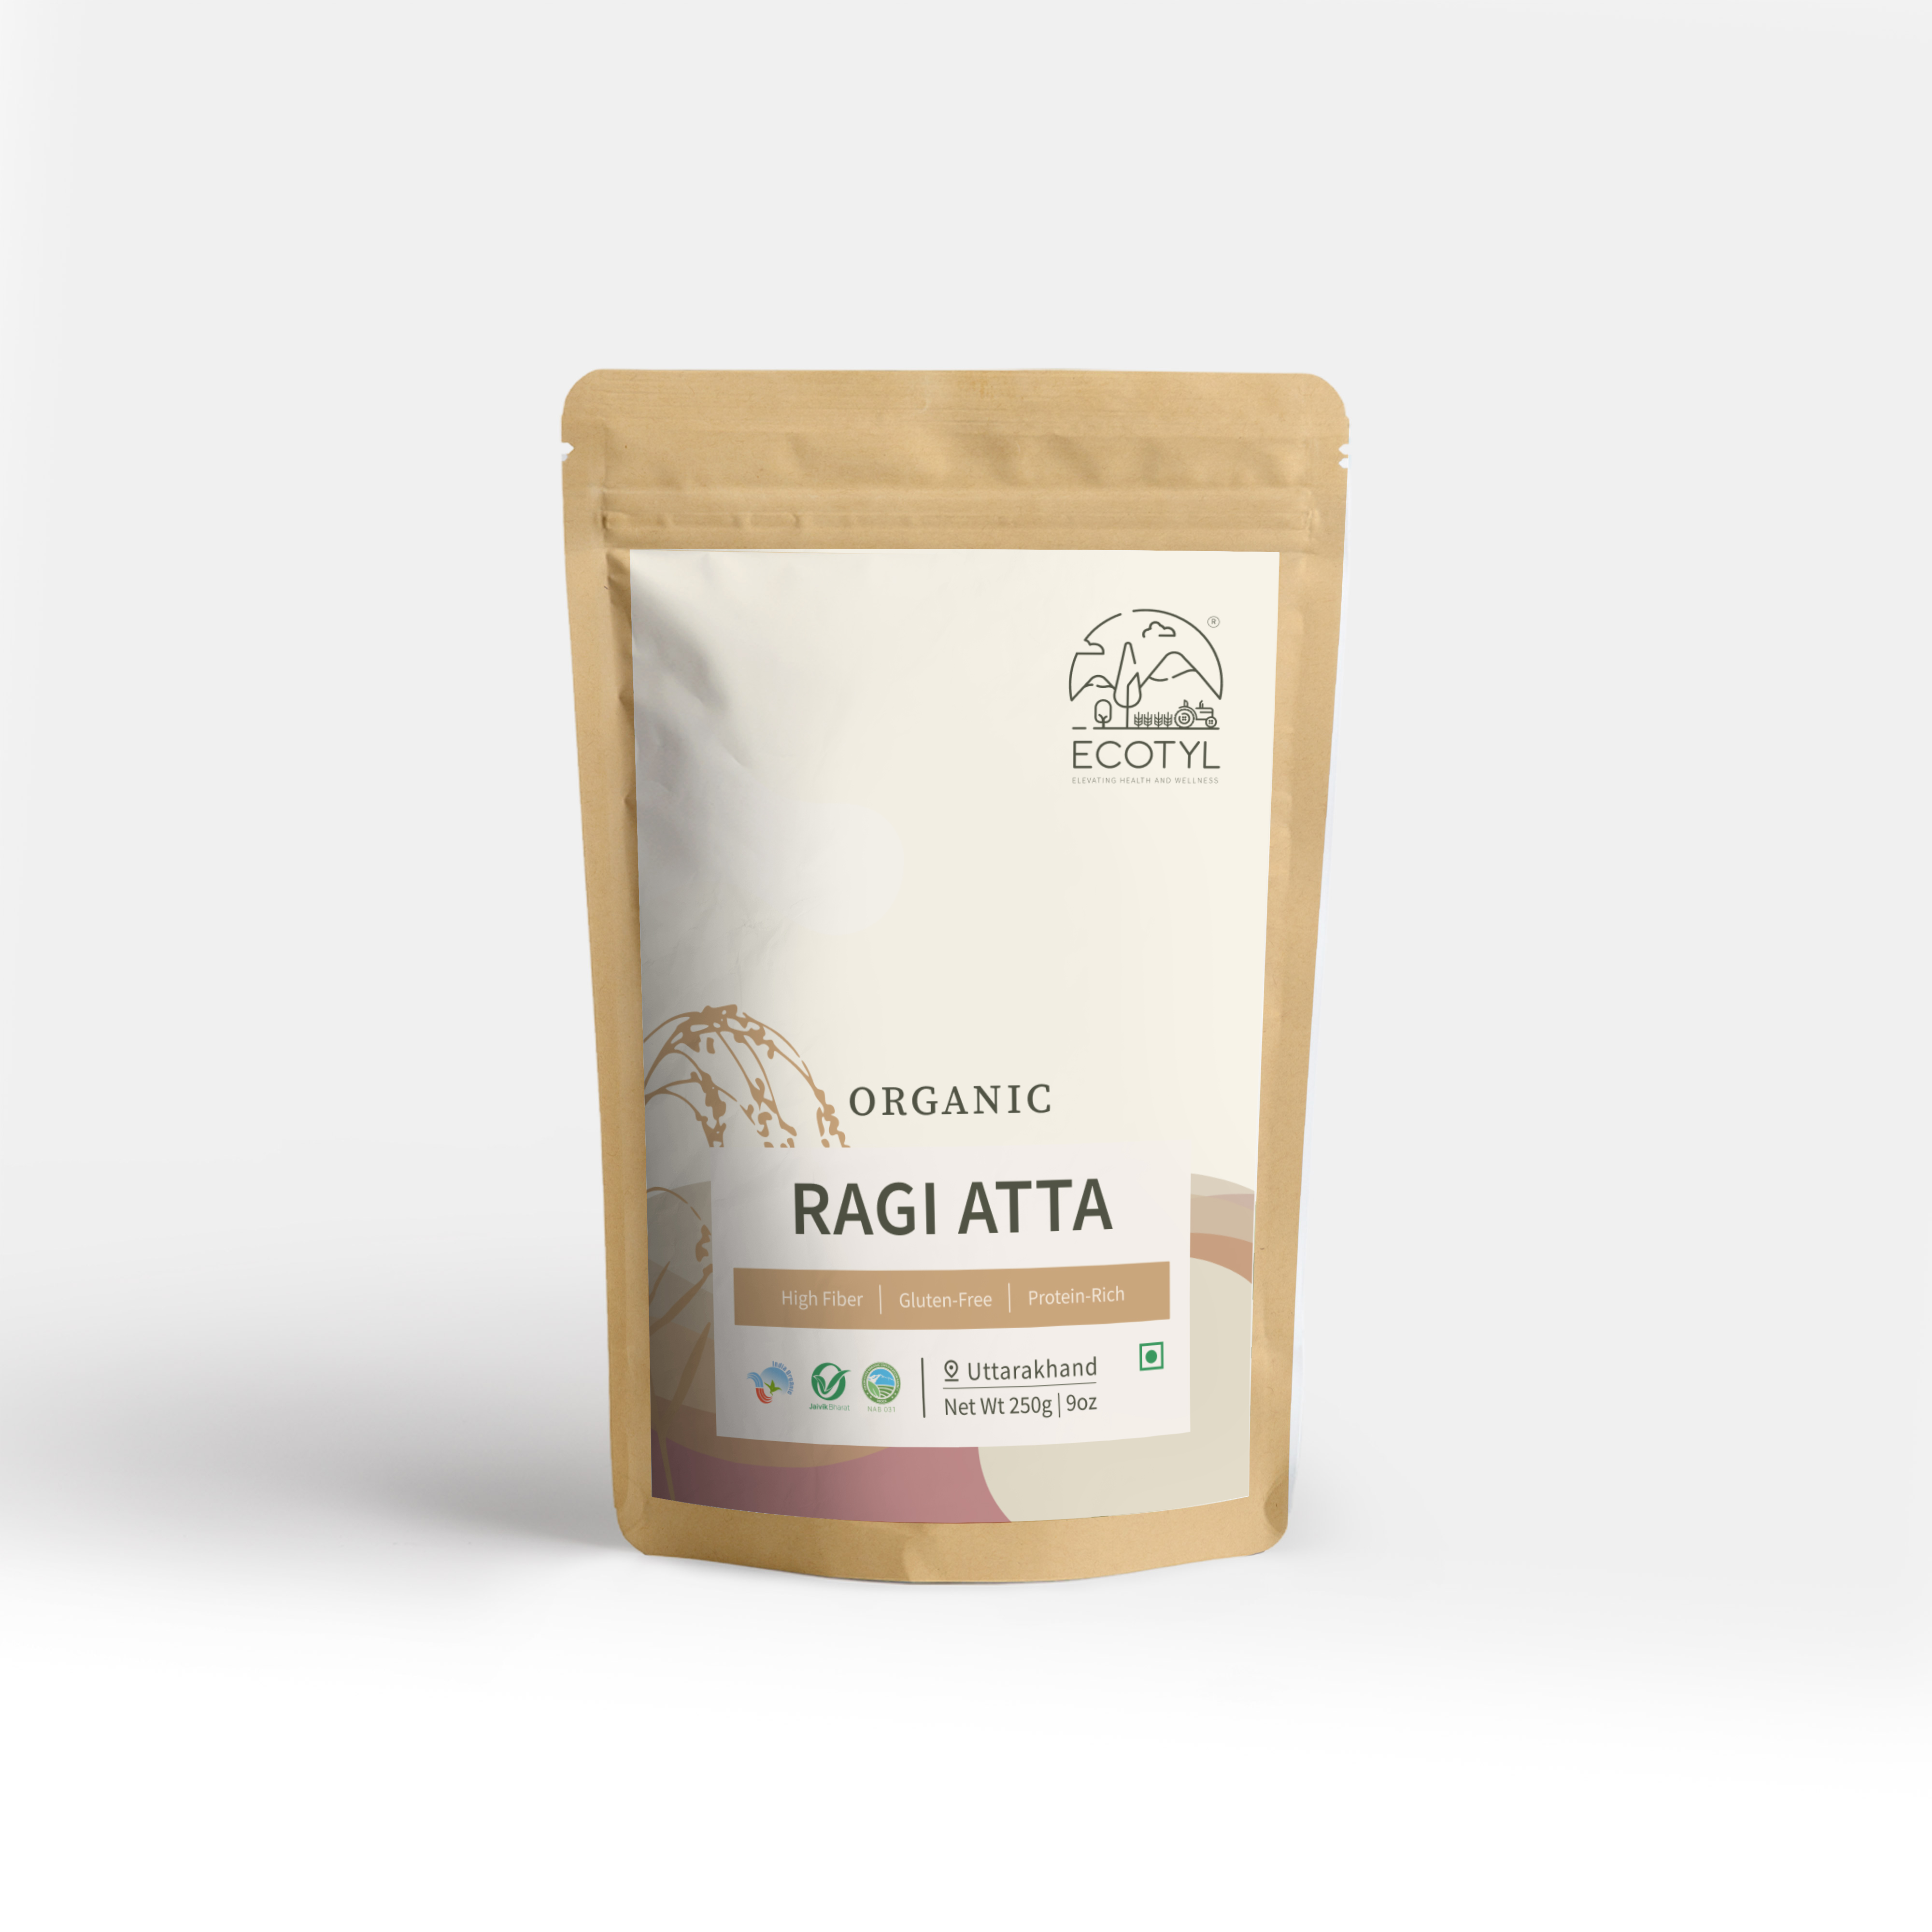 Buy Ecotyl Organic Ragi Atta (Finger Millet Flour) - 250 g at Best Price Online